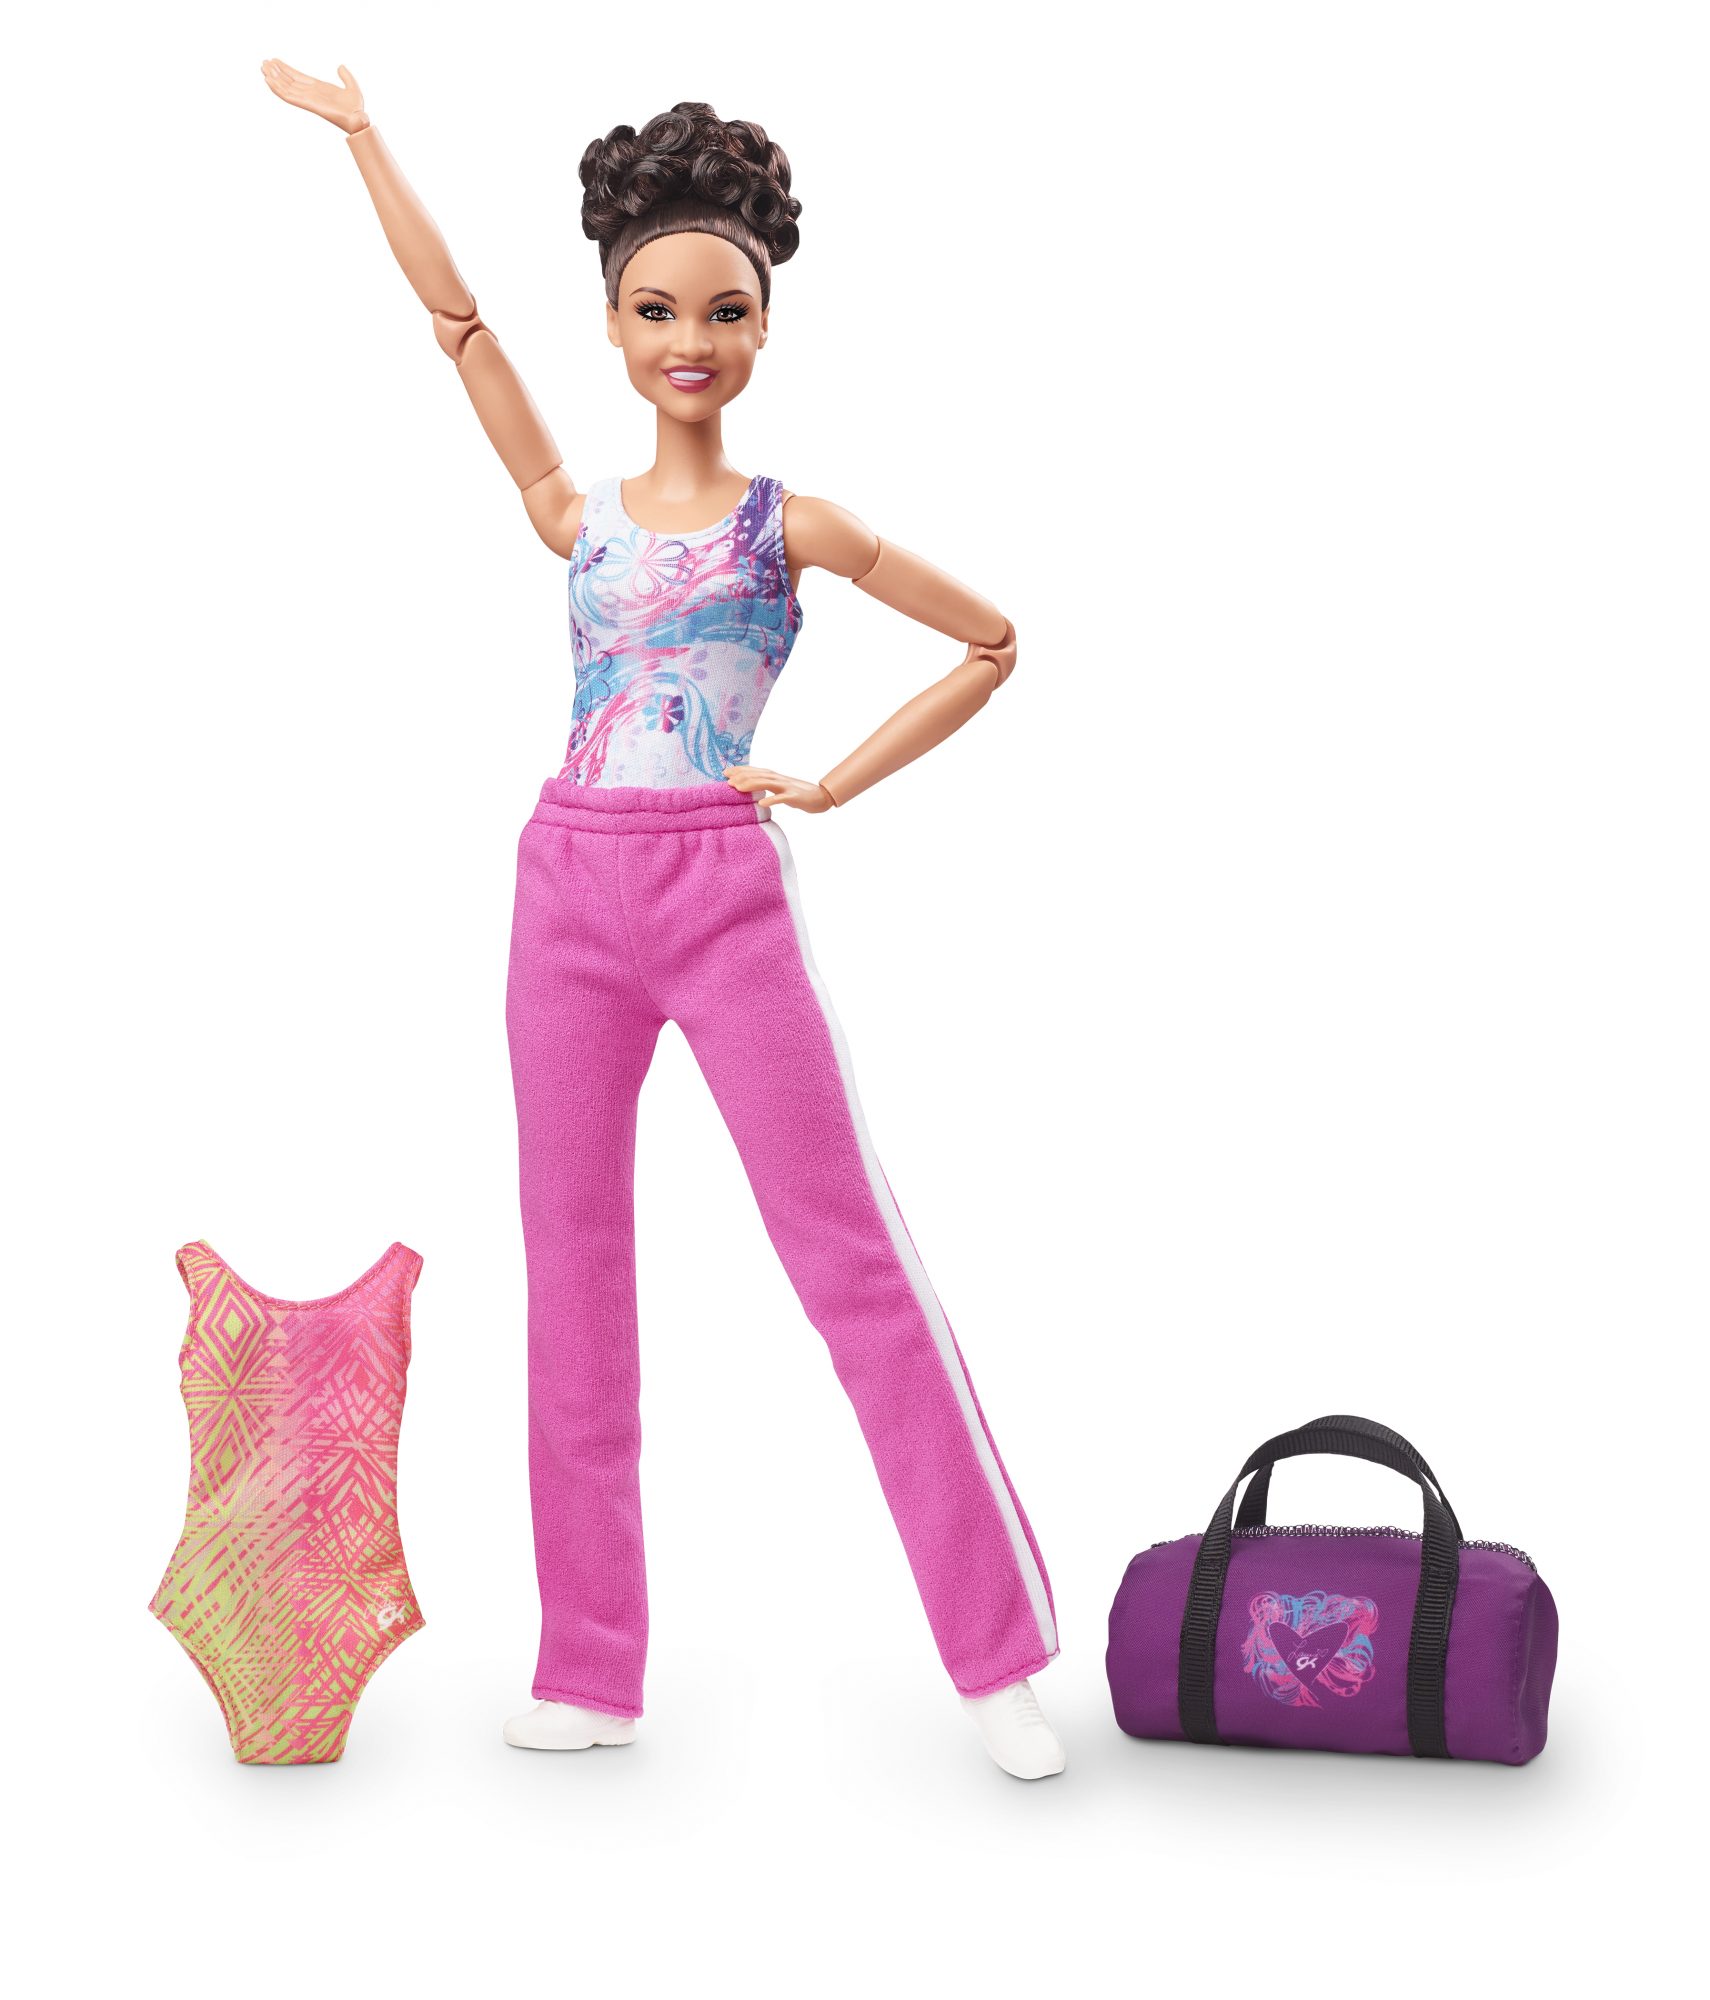 laurie-hernandez-barbie-doll-accessories.jpg